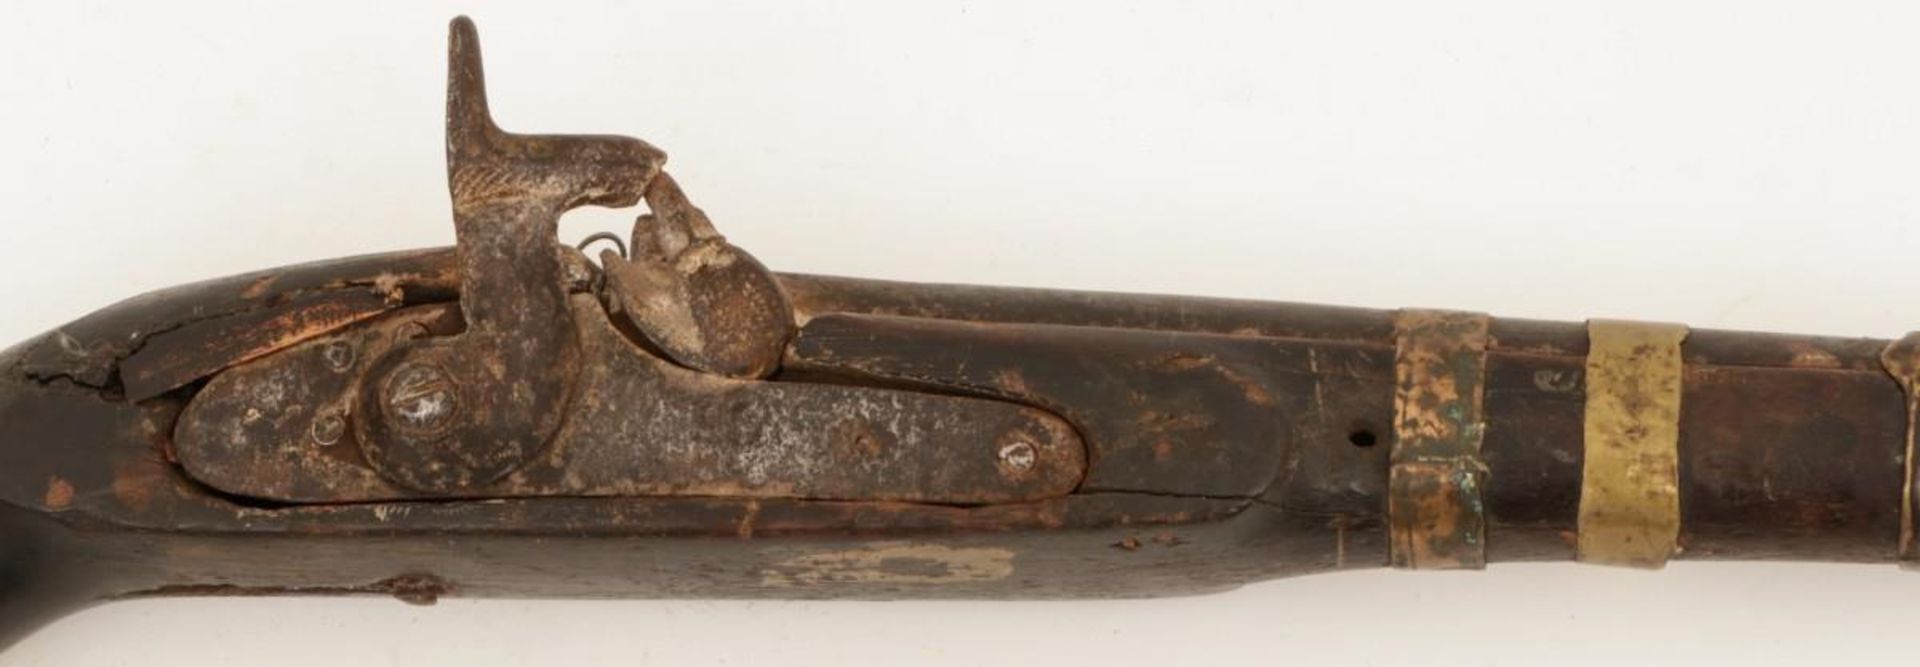 An Afghan percussion rifle, ca. 19th century. - Bild 2 aus 2